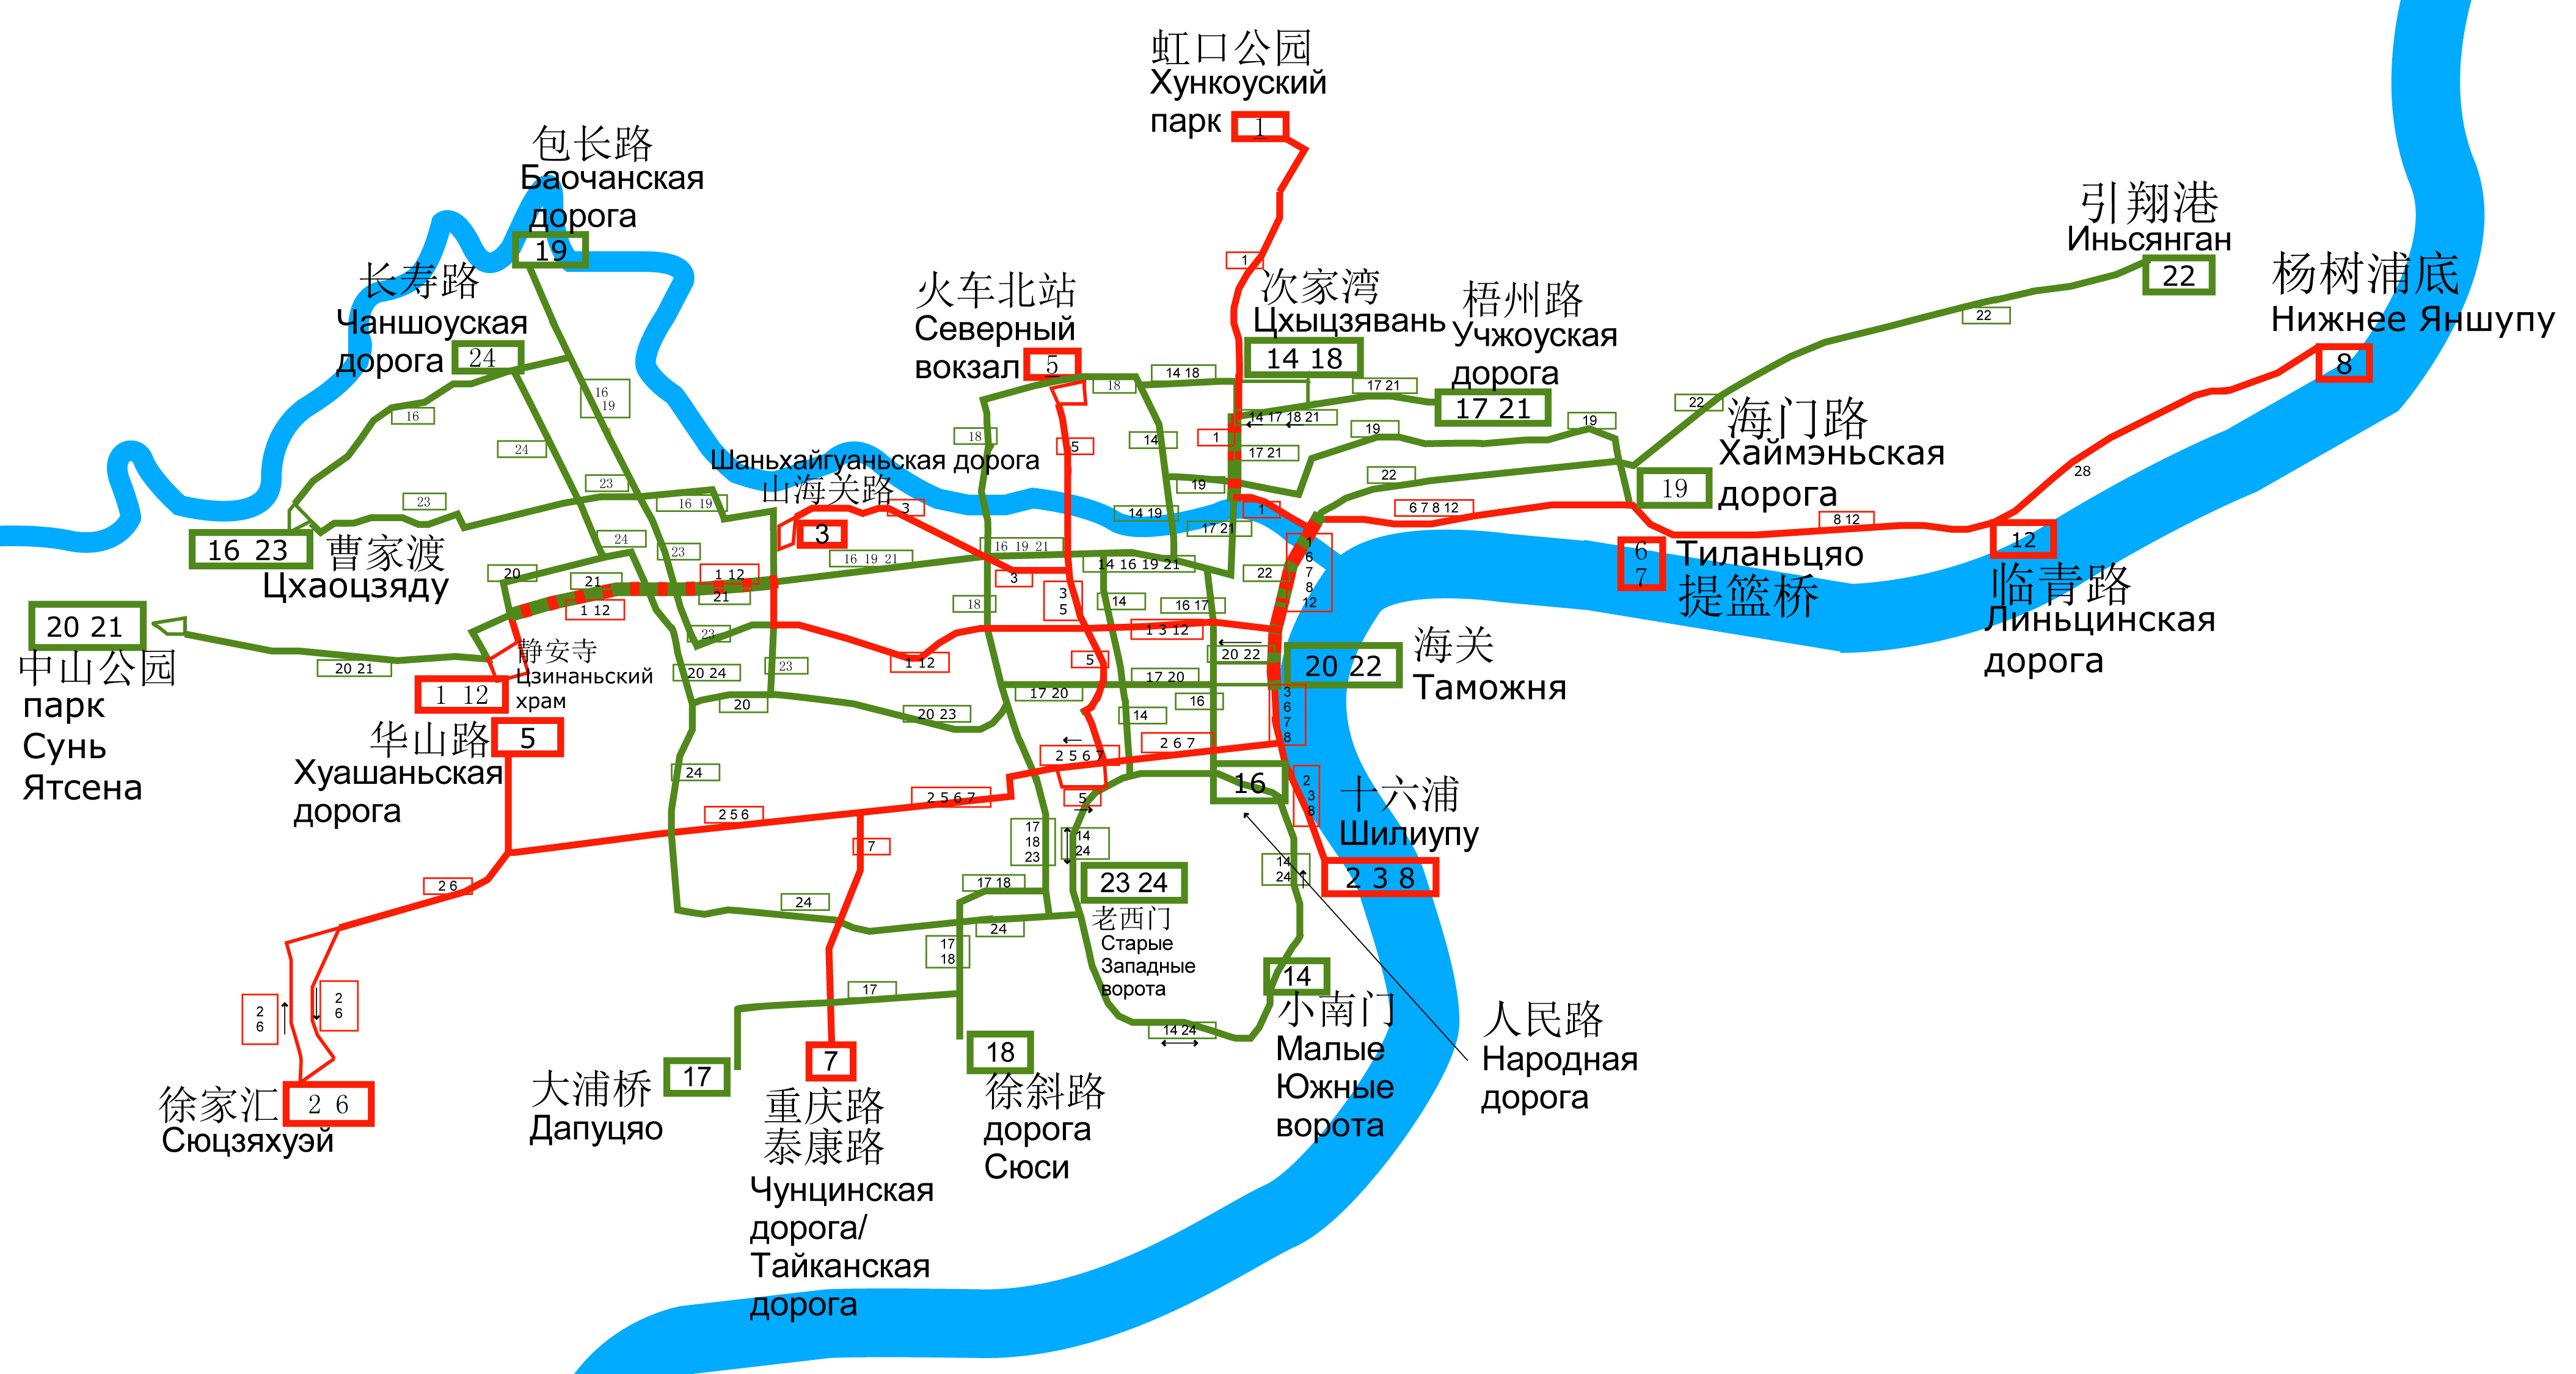 Shanghai — Maps